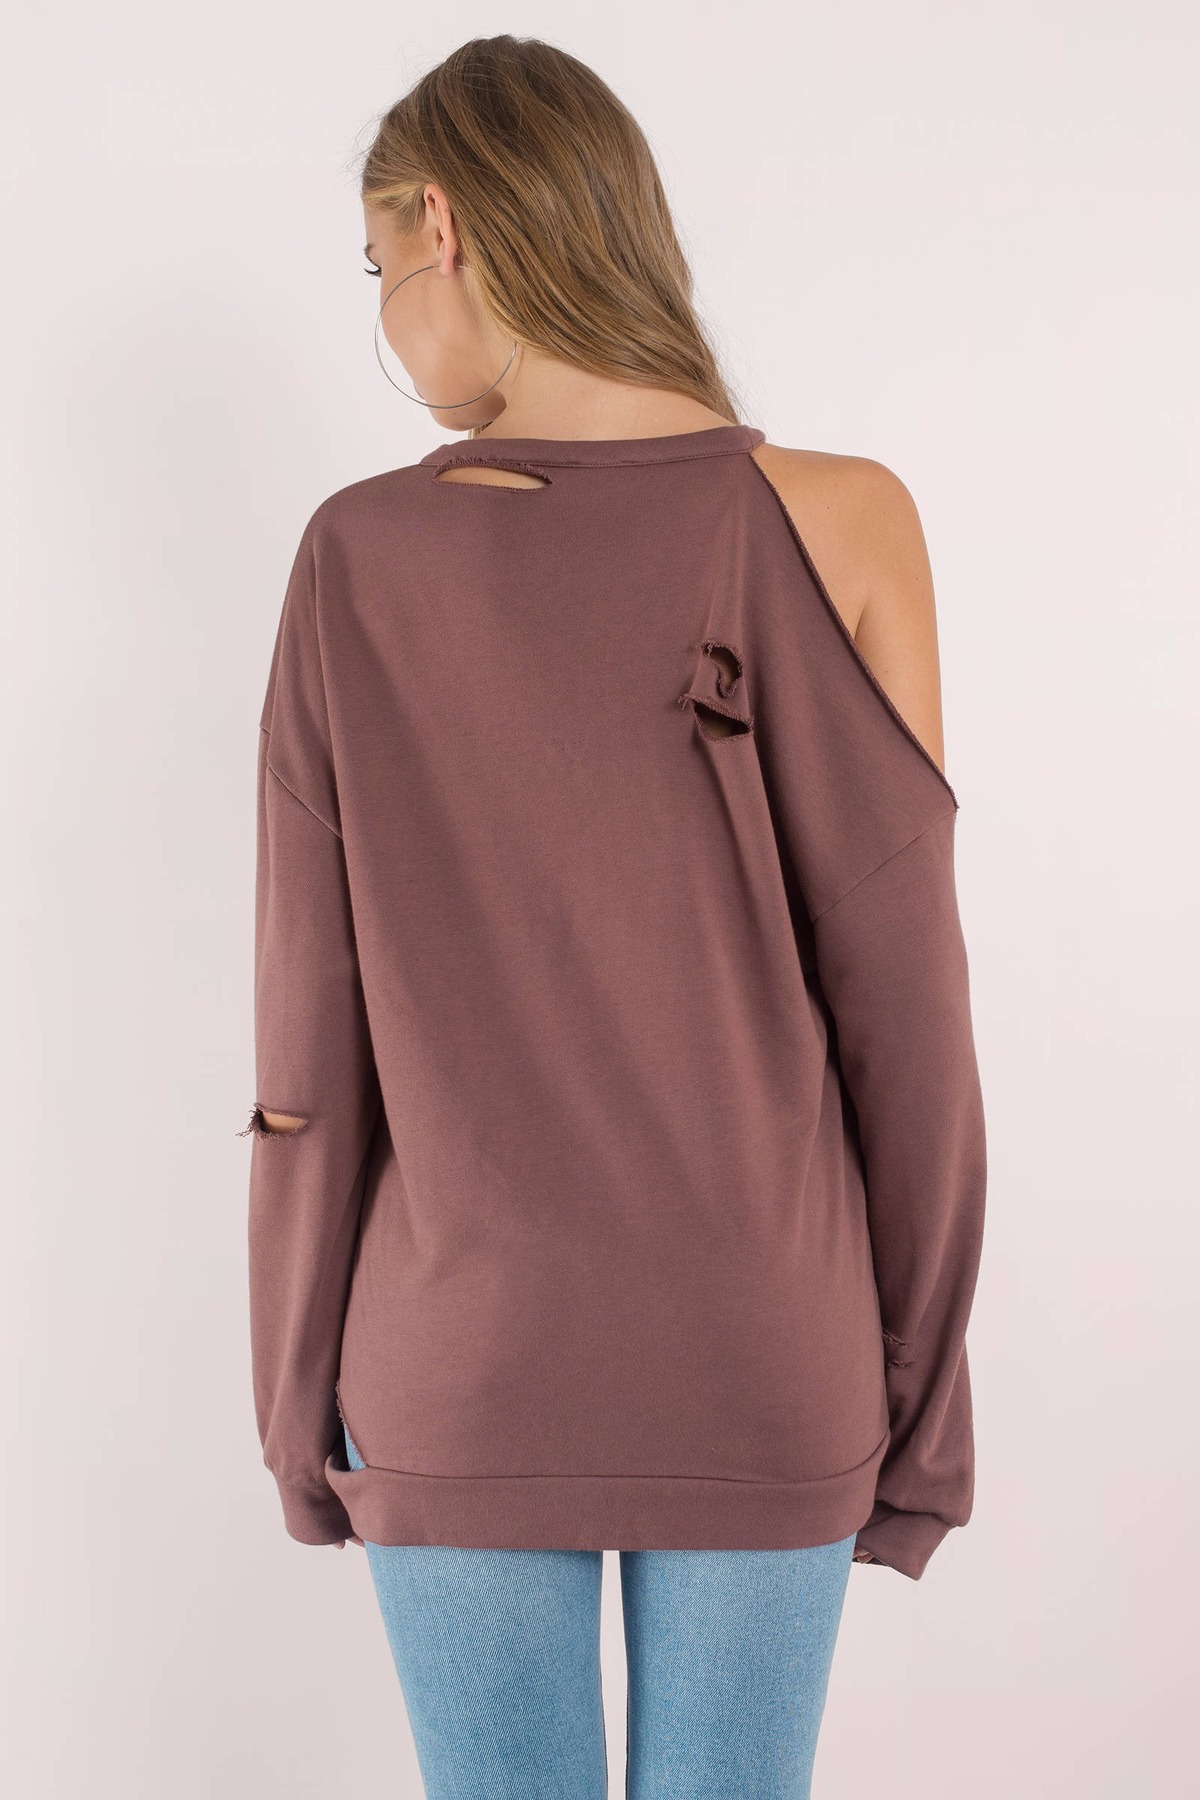 Trendy Black Hoodie - Cold Shoulder - Distressed Sweatshirt - $27 | Tobi US